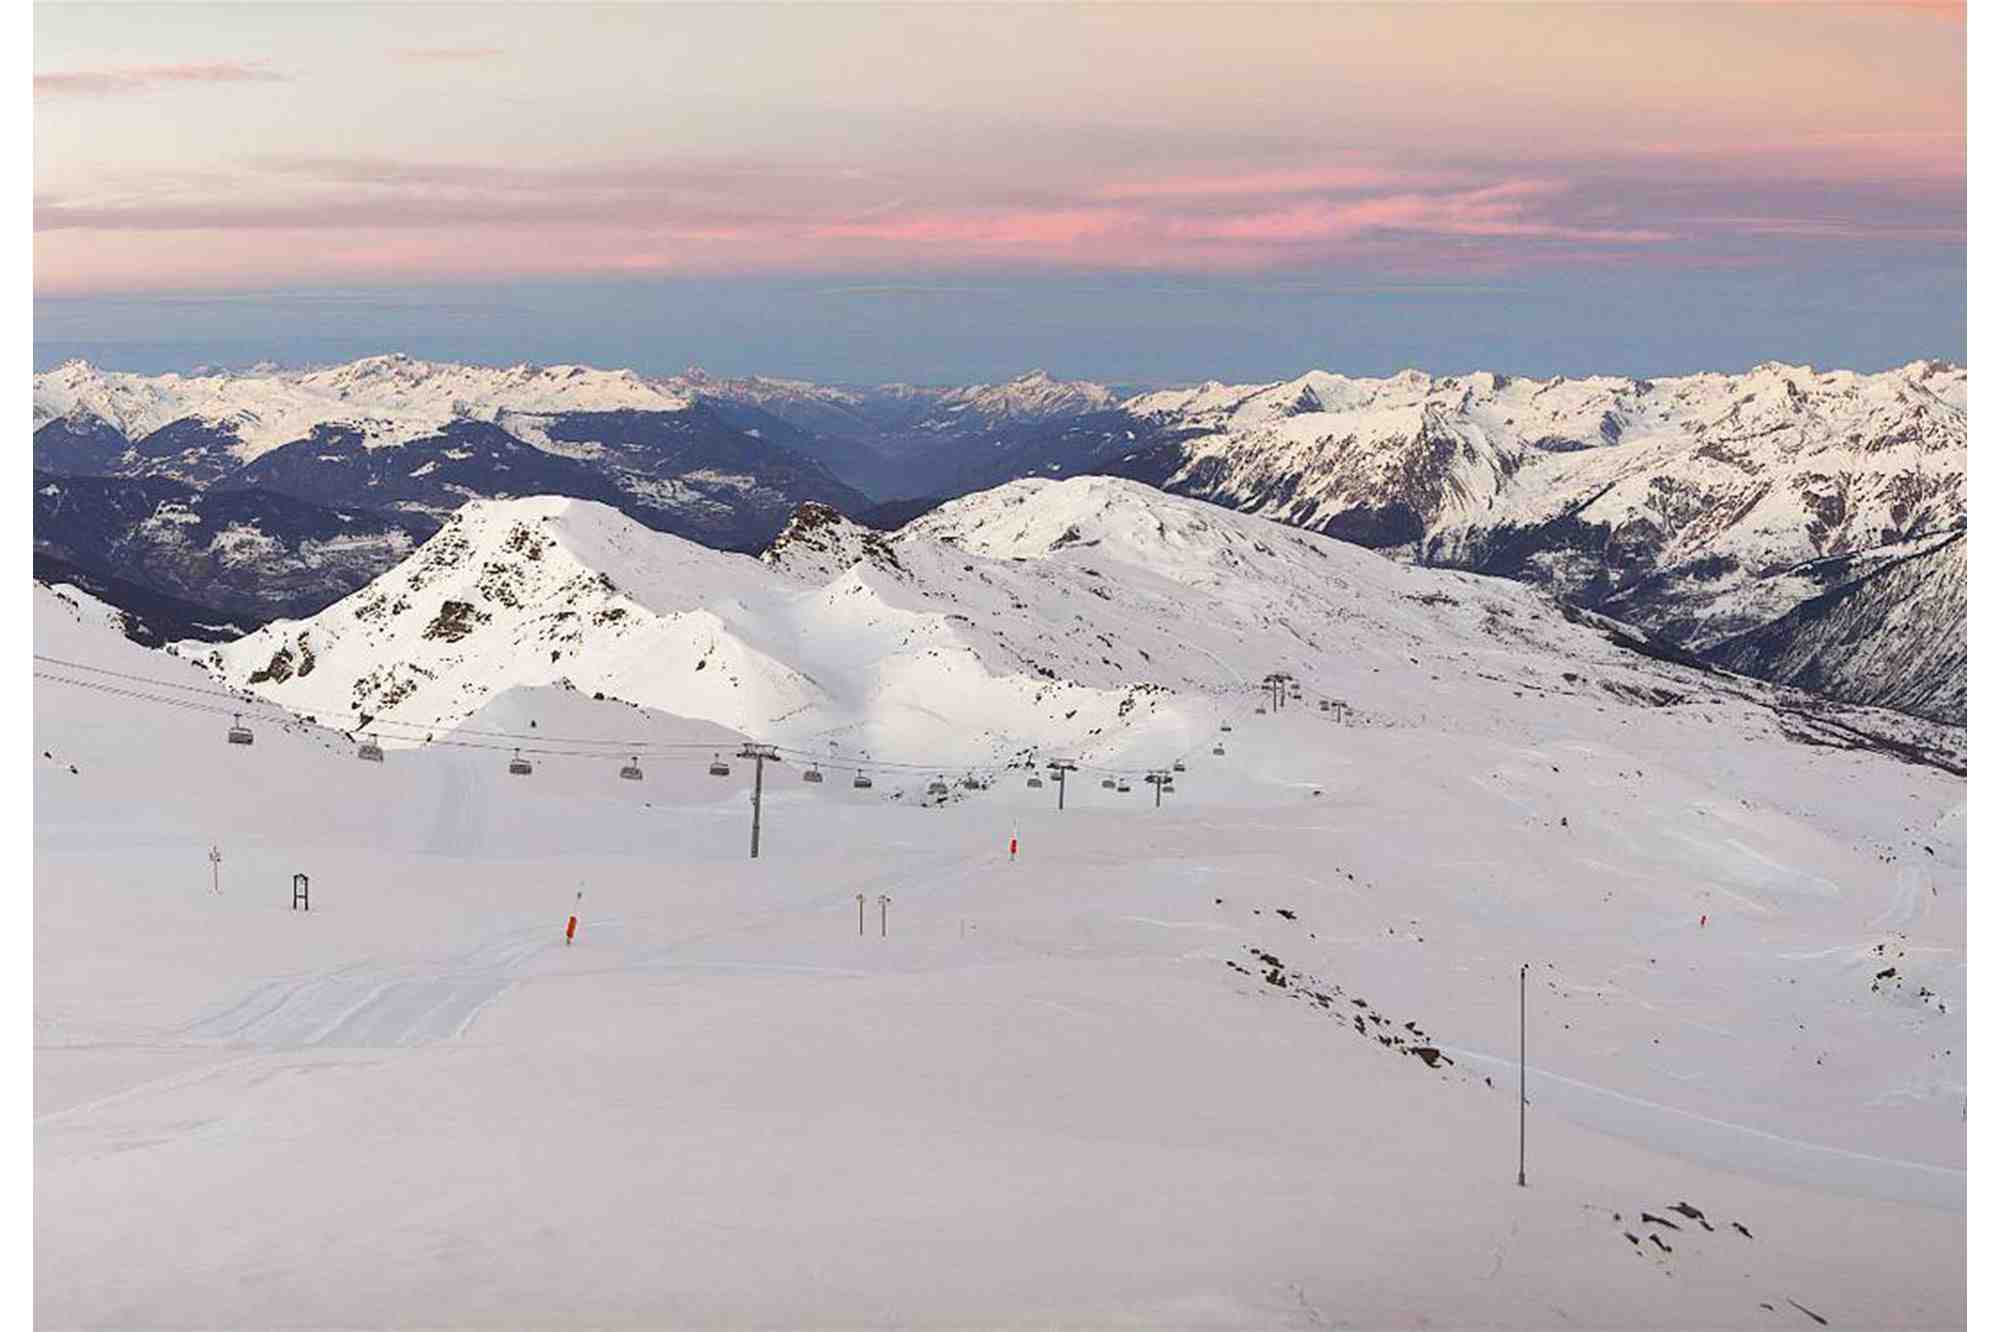 Quelle est la meilleure station de ski?